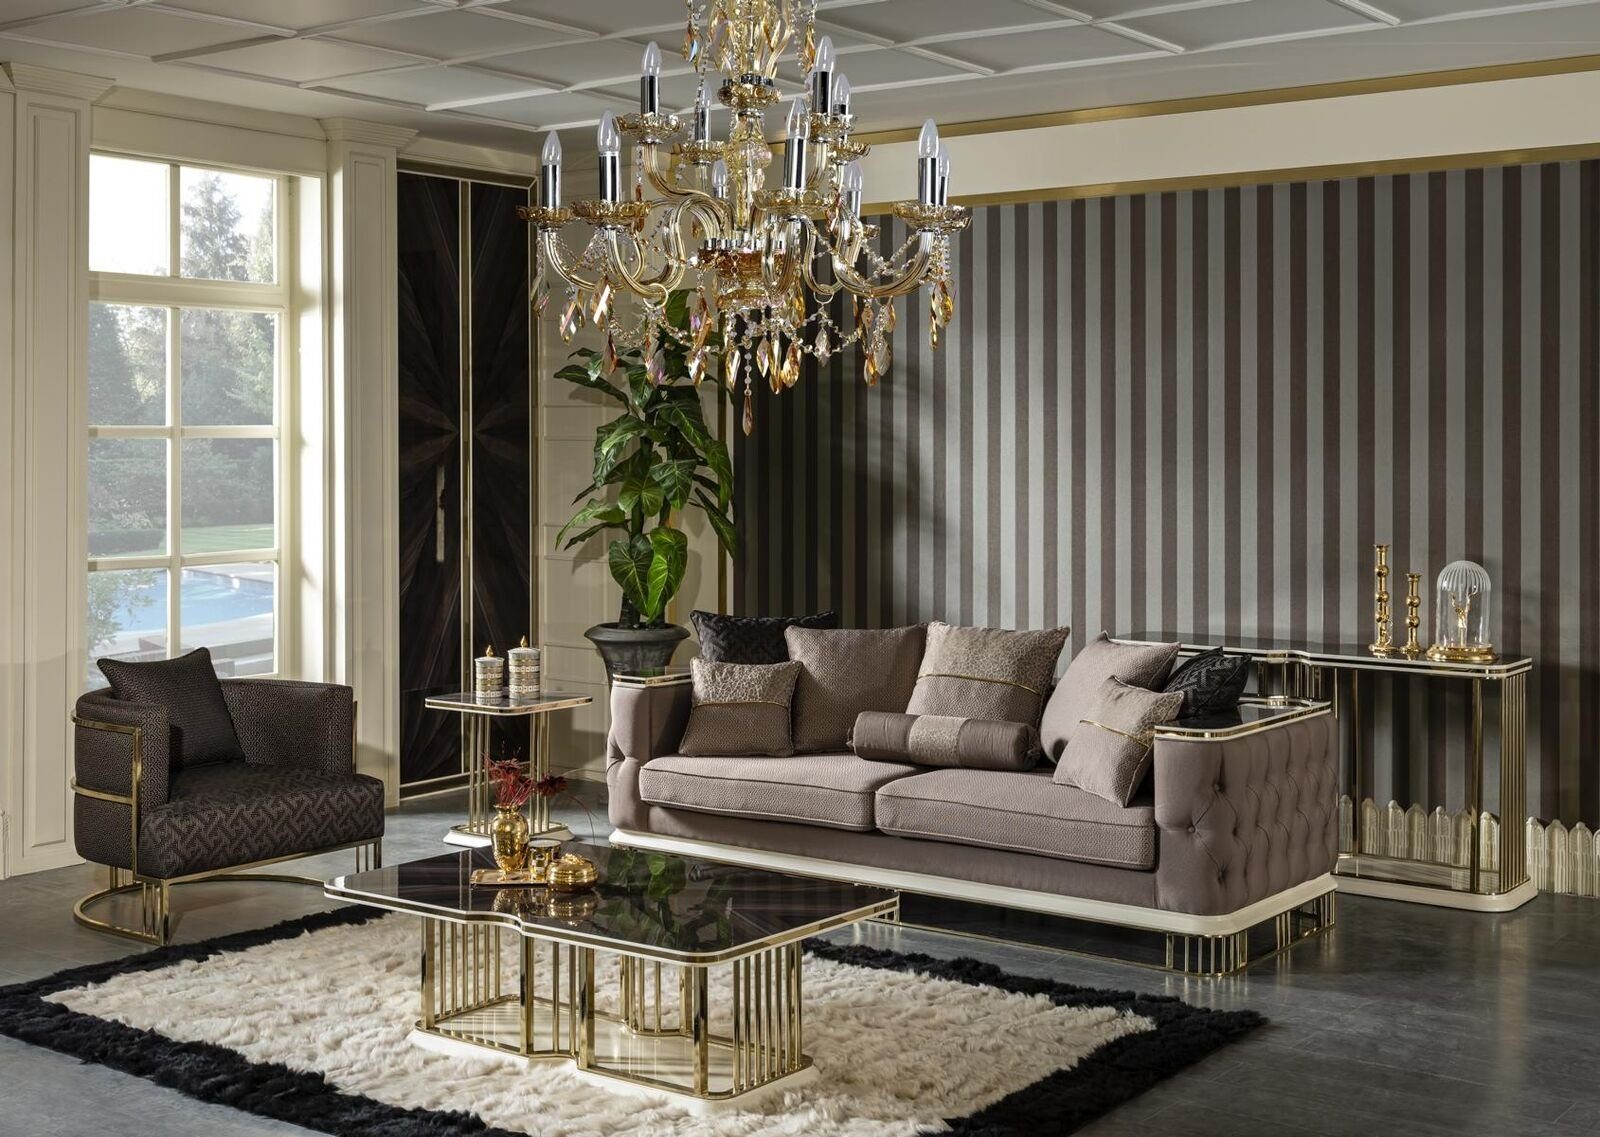 JVmoebel Sofa Sofa 3 Sitzer Möbel, Europe Braun Wohnzimmer Polster in Made Design Stoff Luxus